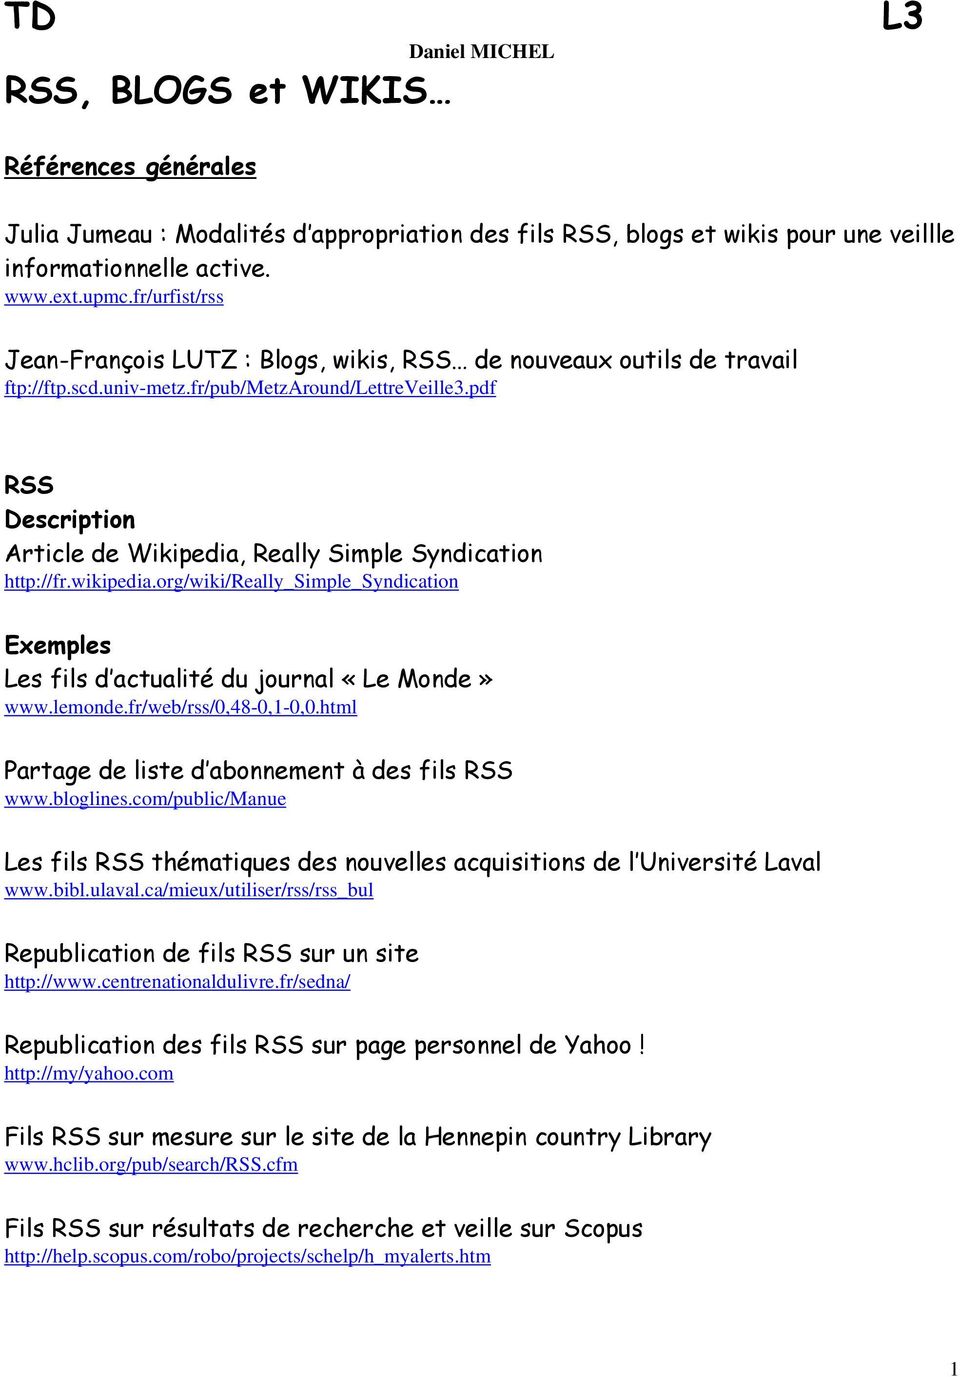 pdf RSS Article de Wikipedia, Really Simple Syndication http://fr.wikipedia.org/wiki/really_simple_syndication Exemples Les fils d actualité du journal «Le Monde» www.lemonde.fr/web/rss/0,48-0,1-0,0.